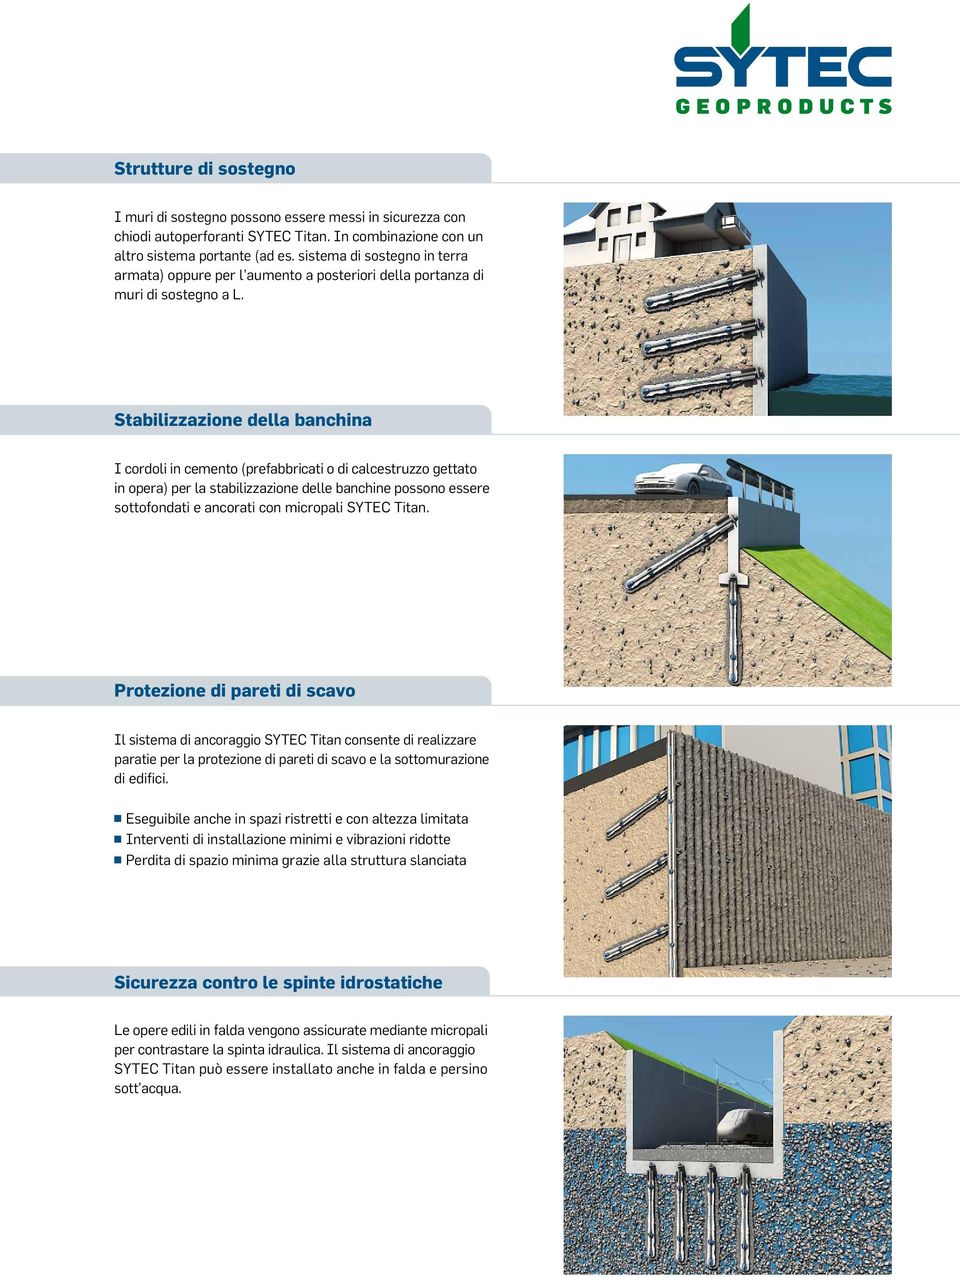 Stabilizzazione della banchina I cordoli in cemento (prefabbricati o di calcestruzzo gettato in opera) per la stabilizzazione delle banchine possono essere sottofondati e ancorati con micropali SYTEC